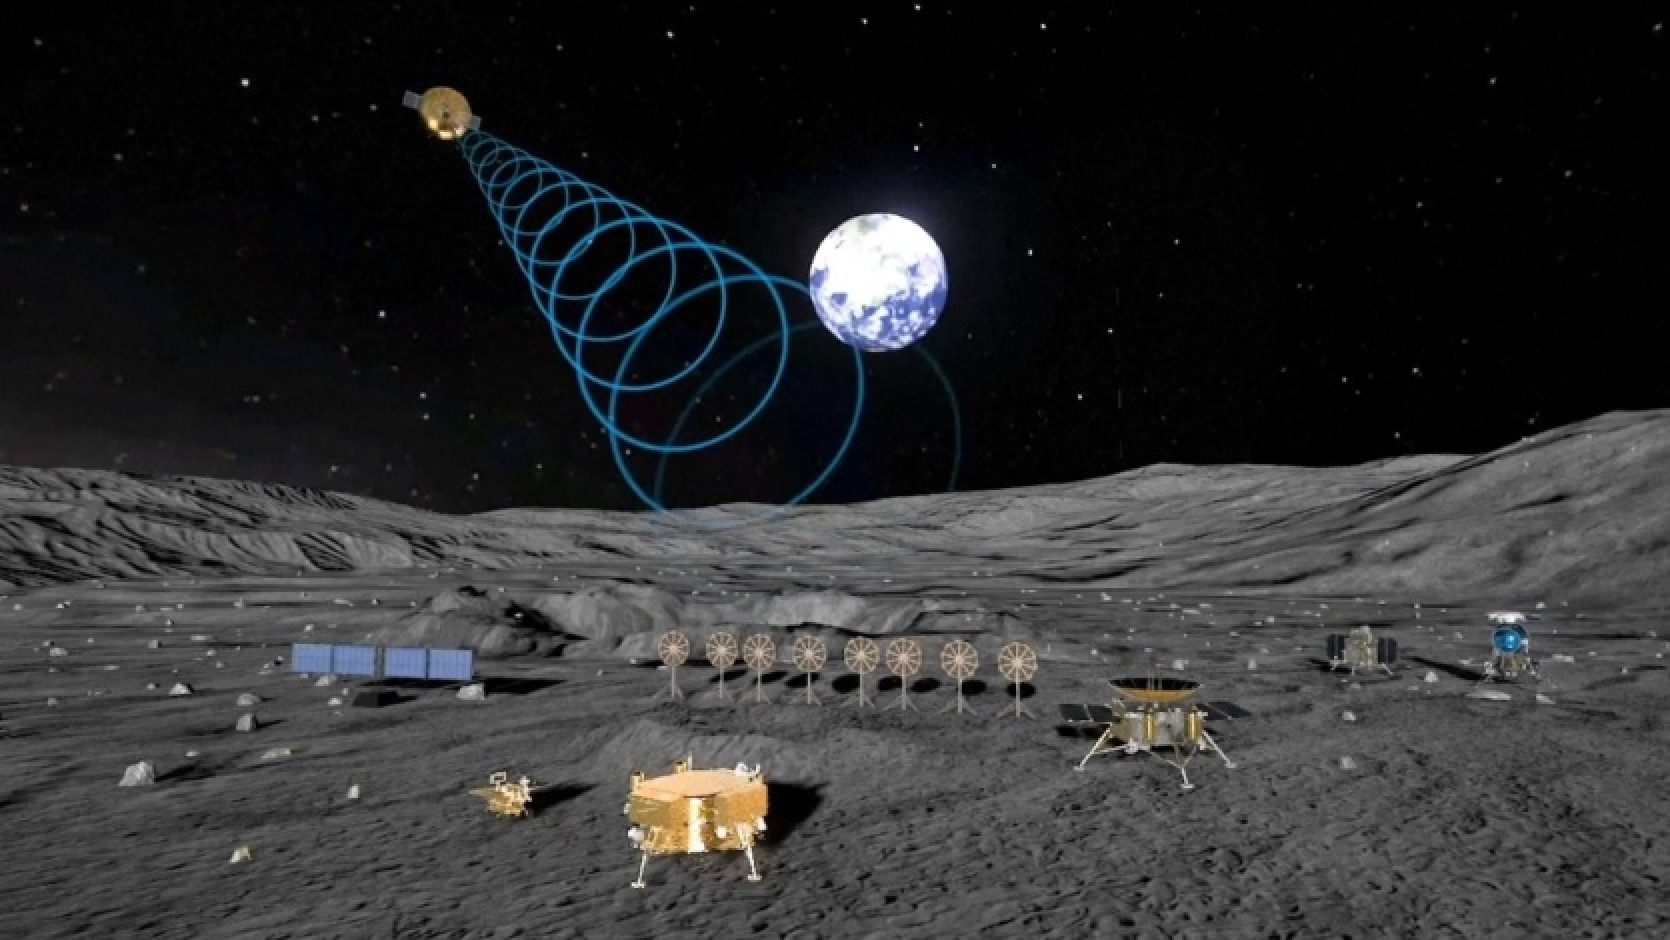 Ķīna parādīja kosmosa bāzes projektu uz Mēness - tur kaut kādu iemeslu dēļ bija NASA raķete, kuras ekspluatācija tika pārtraukta 2011. gadā.